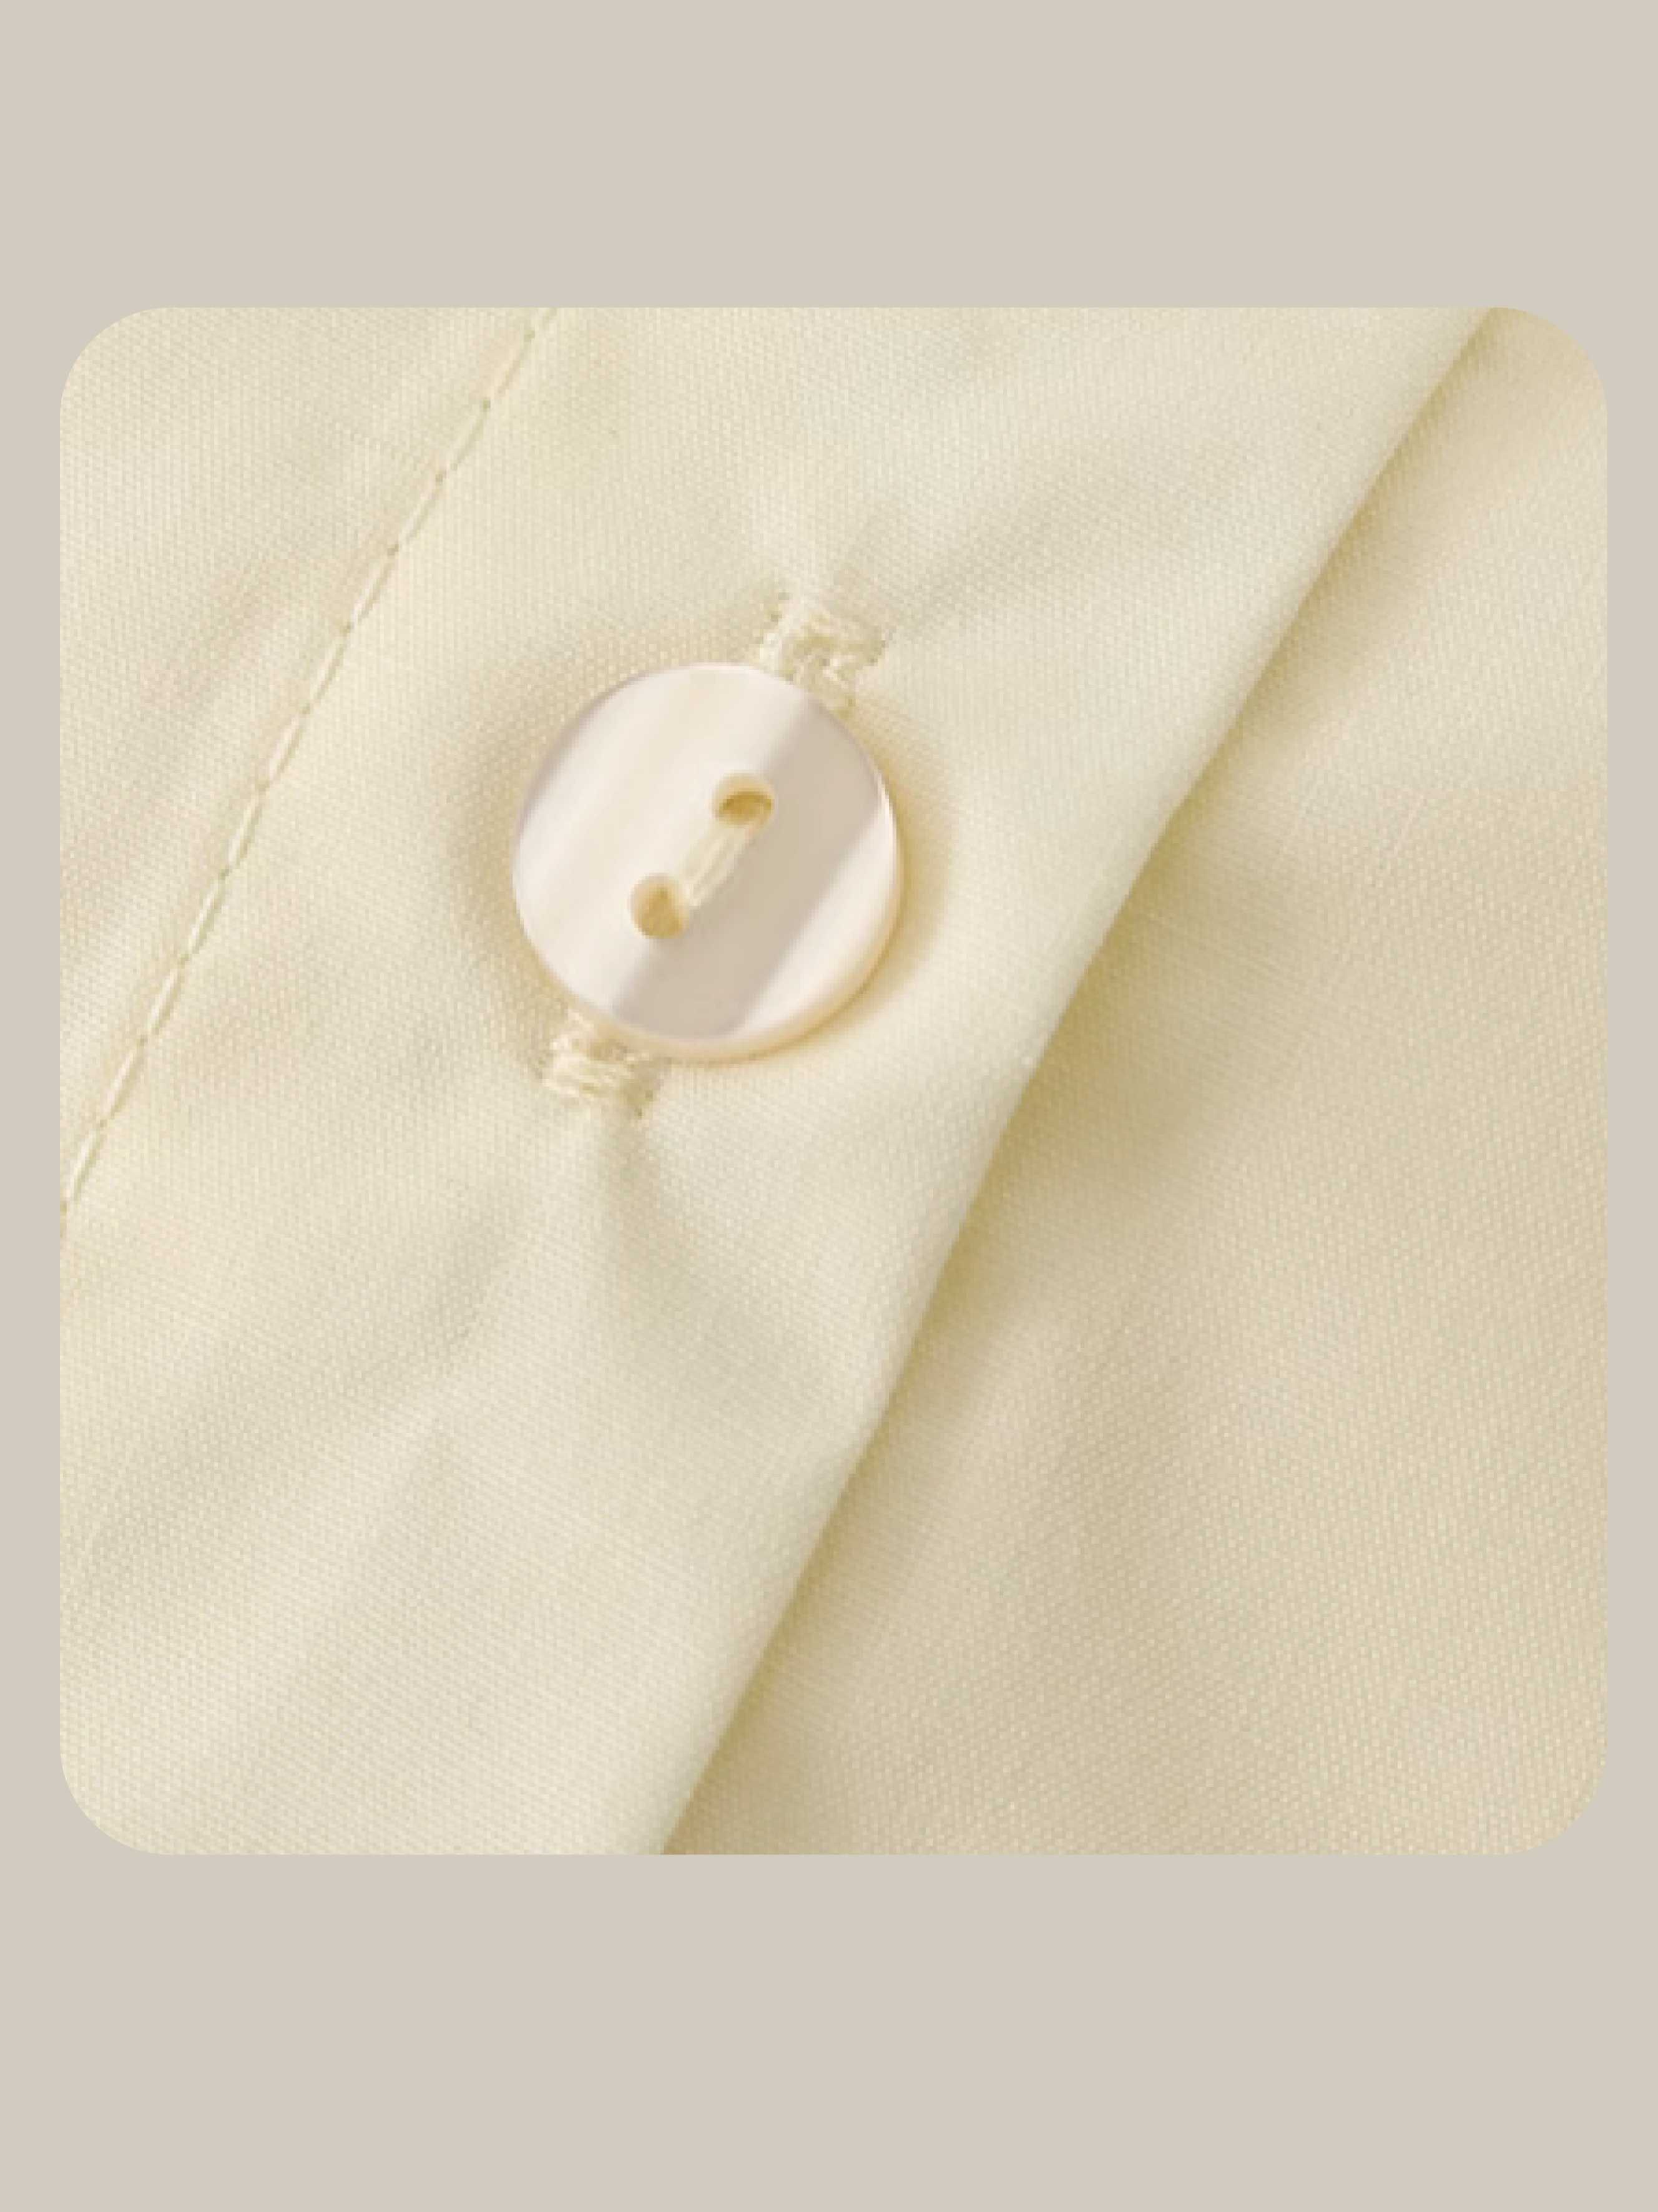 Collar Embroiderd Blouse 刺繍カラーブラウス